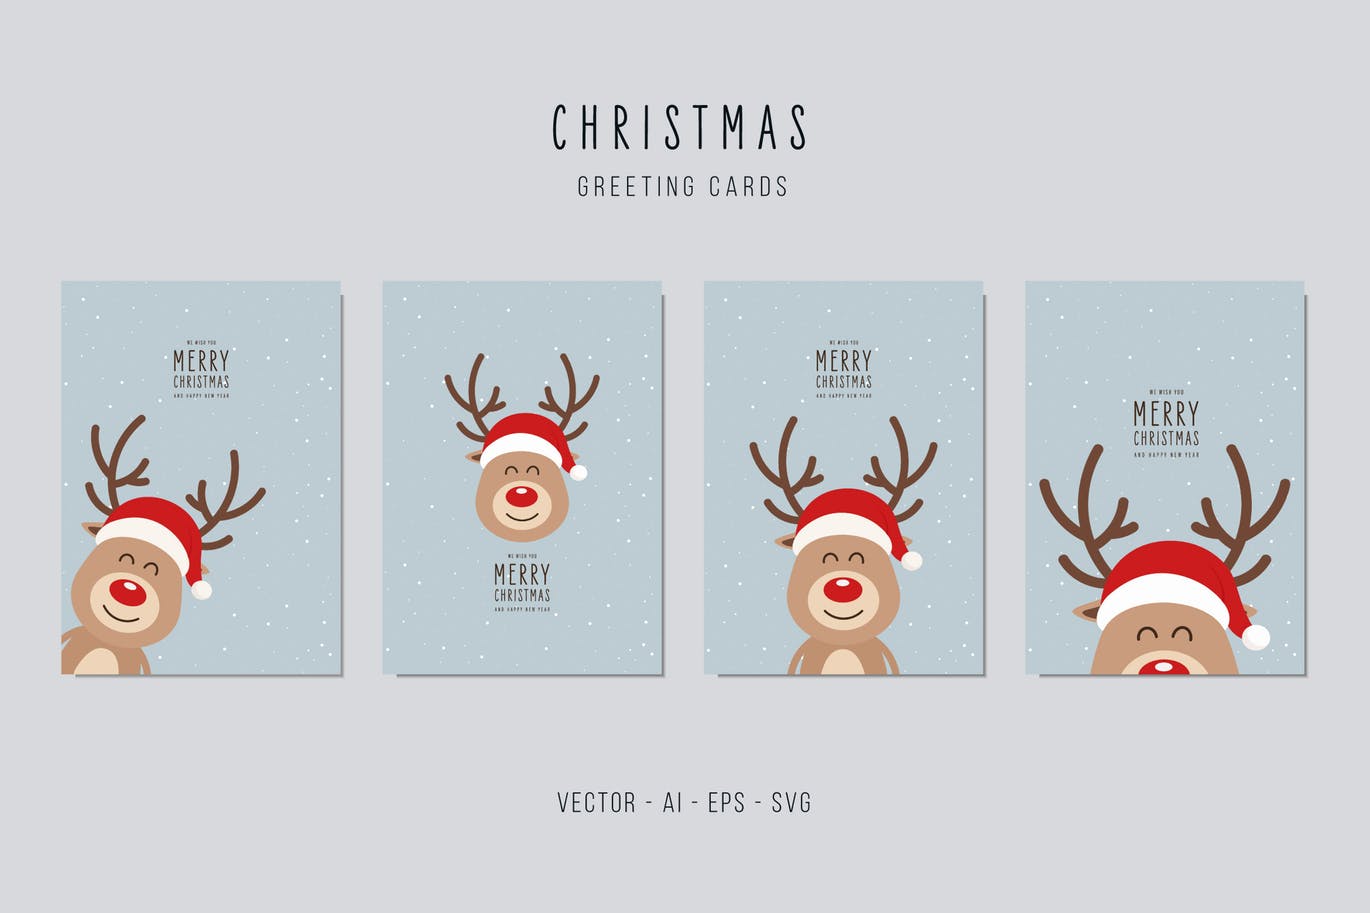 可爱卡通驯鹿图案圣诞节矢量贺卡设计模板v2 Christmas Reindeer Vector Card Set插图